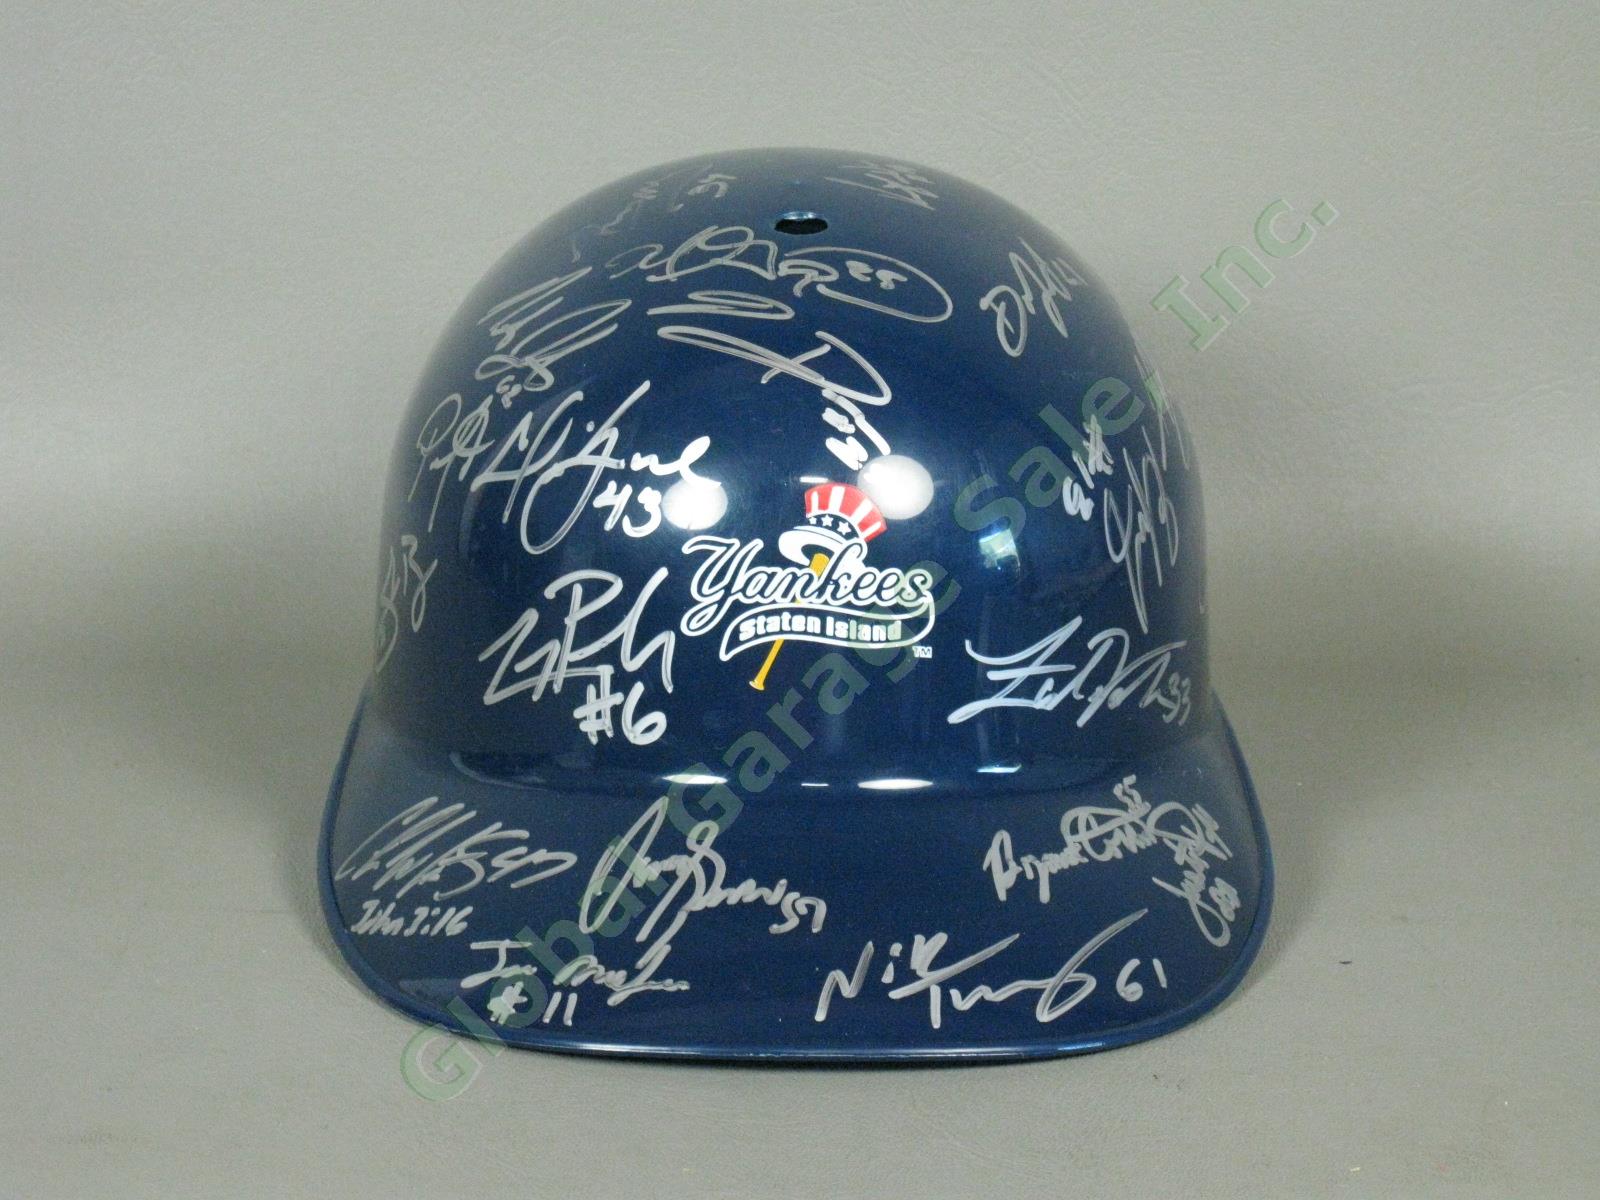 2010 Staten Island Yankees Team Signed Baseball Helmet MiLB MLB NYPL New York NR